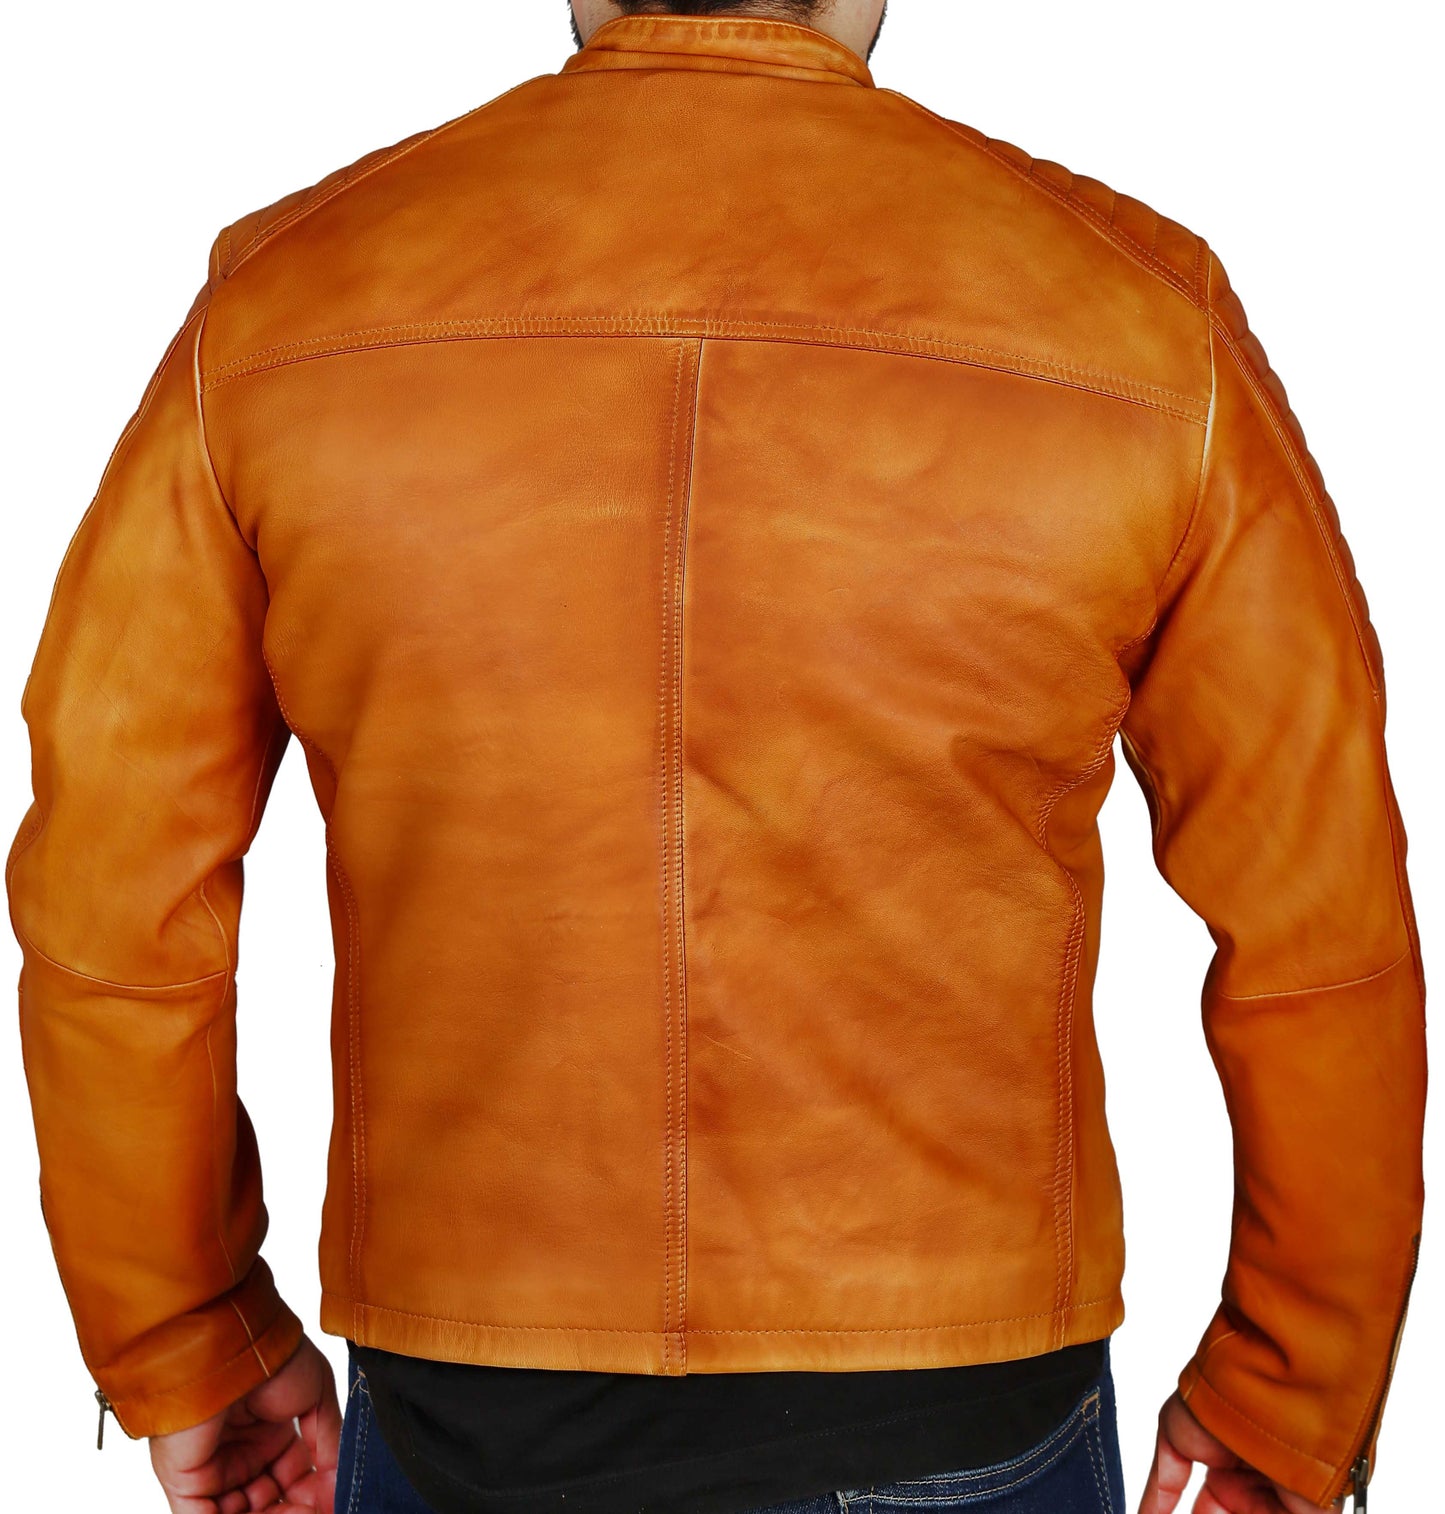 Men's Elite Herran Biker Motorcycle Distressed Golden Brown Leather Jacket